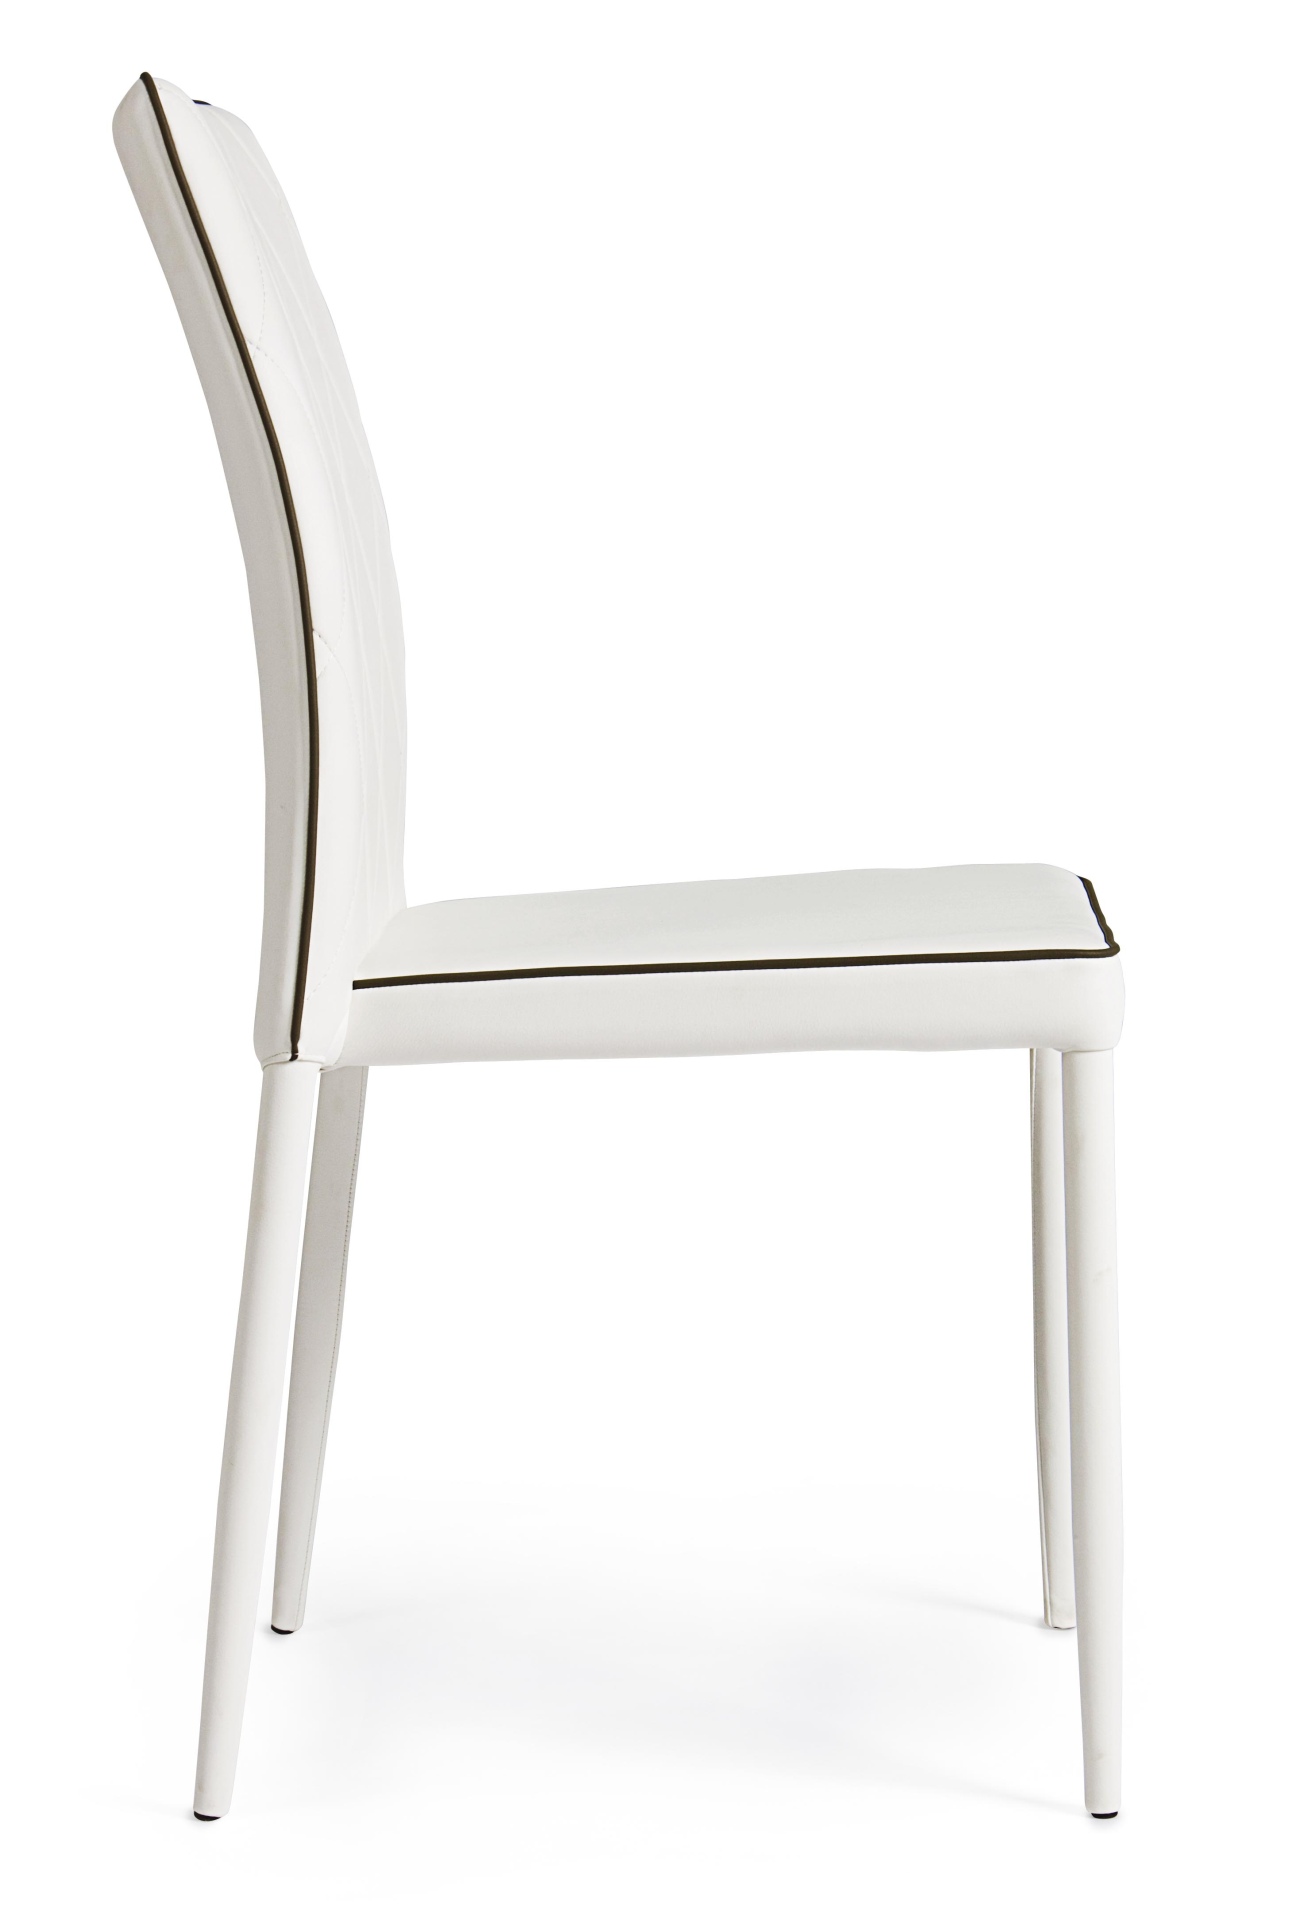 Der Stuhl Achille überzeugt mit seinem modernem Design. Gefertigt wurde der Stuhl aus Kunstleder, welches einen weißen Farbton besitzt. Das Gestell ist aus Metall und ist in der Selben Farbe wie die Sitzfläche. Der Stuhl verfügt über eine Gesteppte Rücken